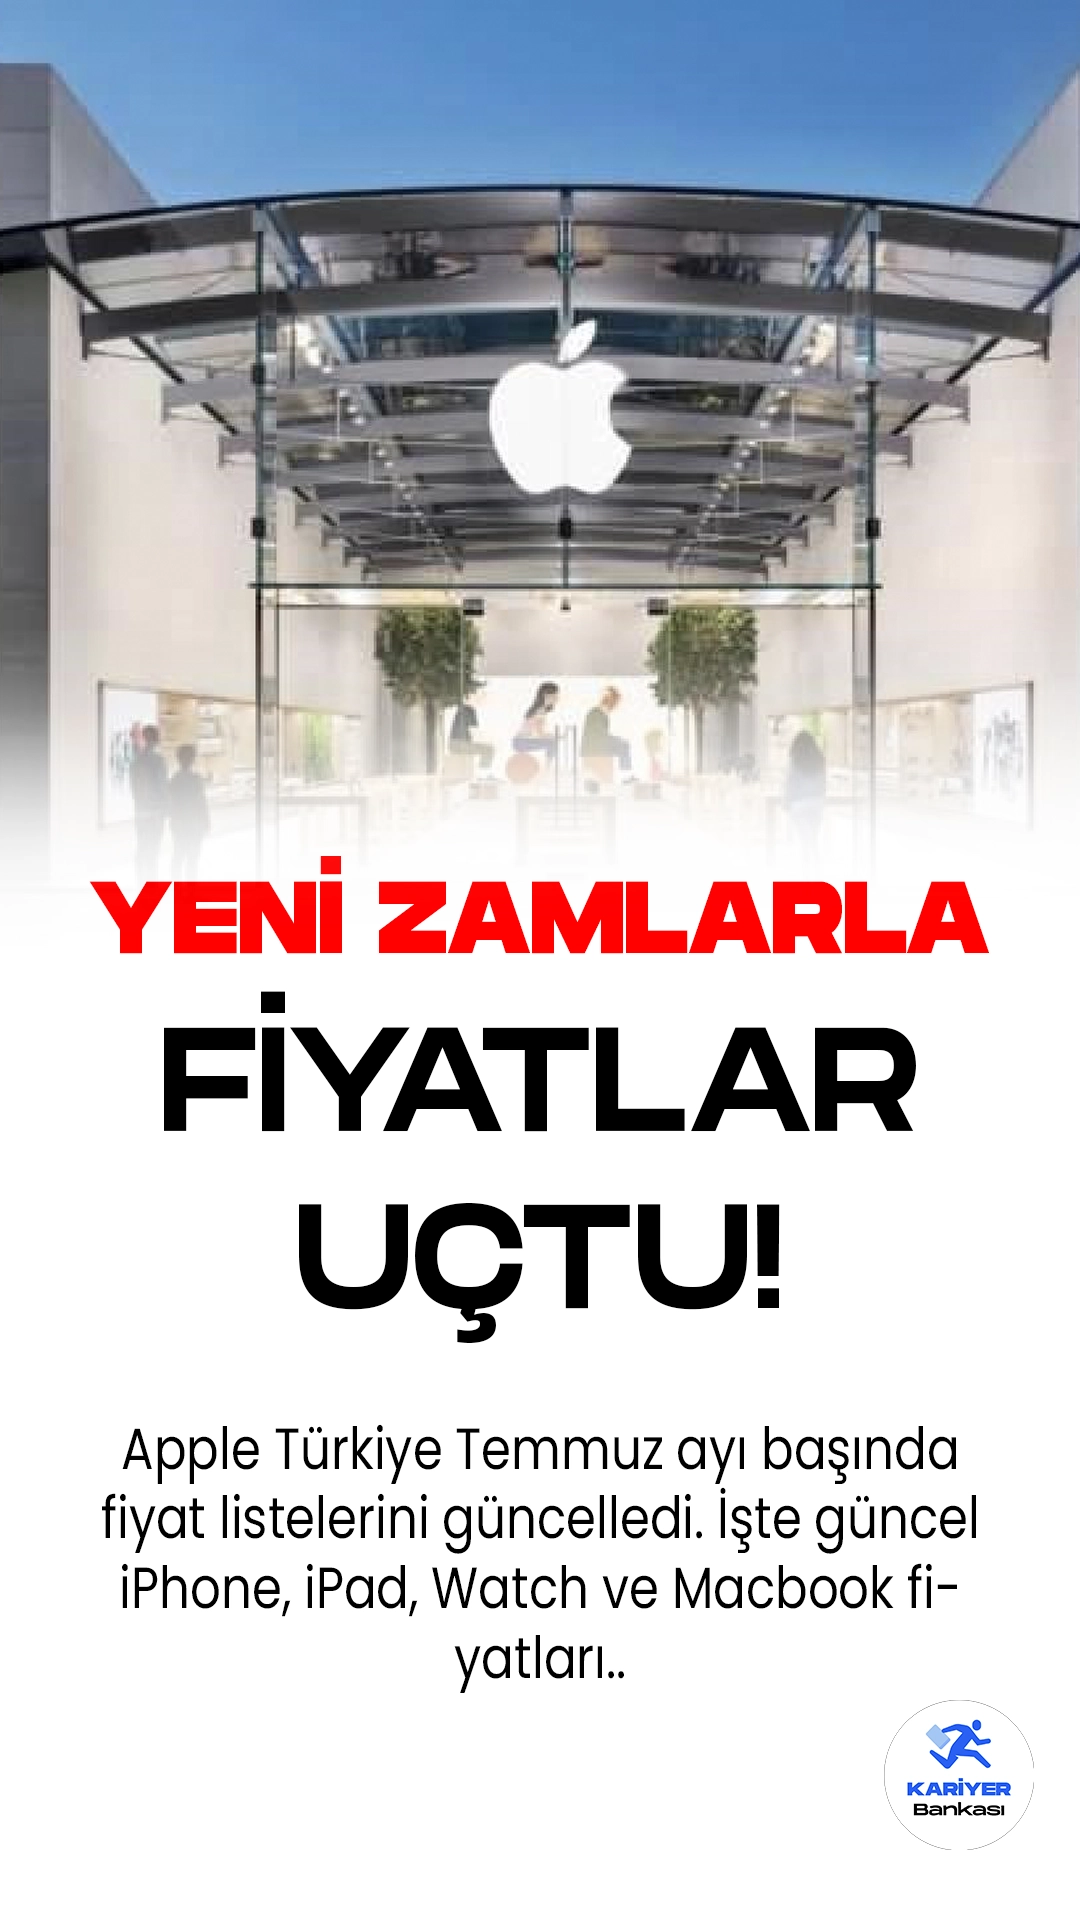 Apple Türkiye, Yükselen Döviz Kuruyla Birlikte Ürün Fiyatlarına Zam Yaptı.Apple Türkiye, yükselen döviz kuru nedeniyle bugün itibariyle iPhone, iPad, MacBook ve Watch dahil olmak üzere tüm ürünlerine bir kez daha zam uyguladı. İşte güncel fiyat listesi: